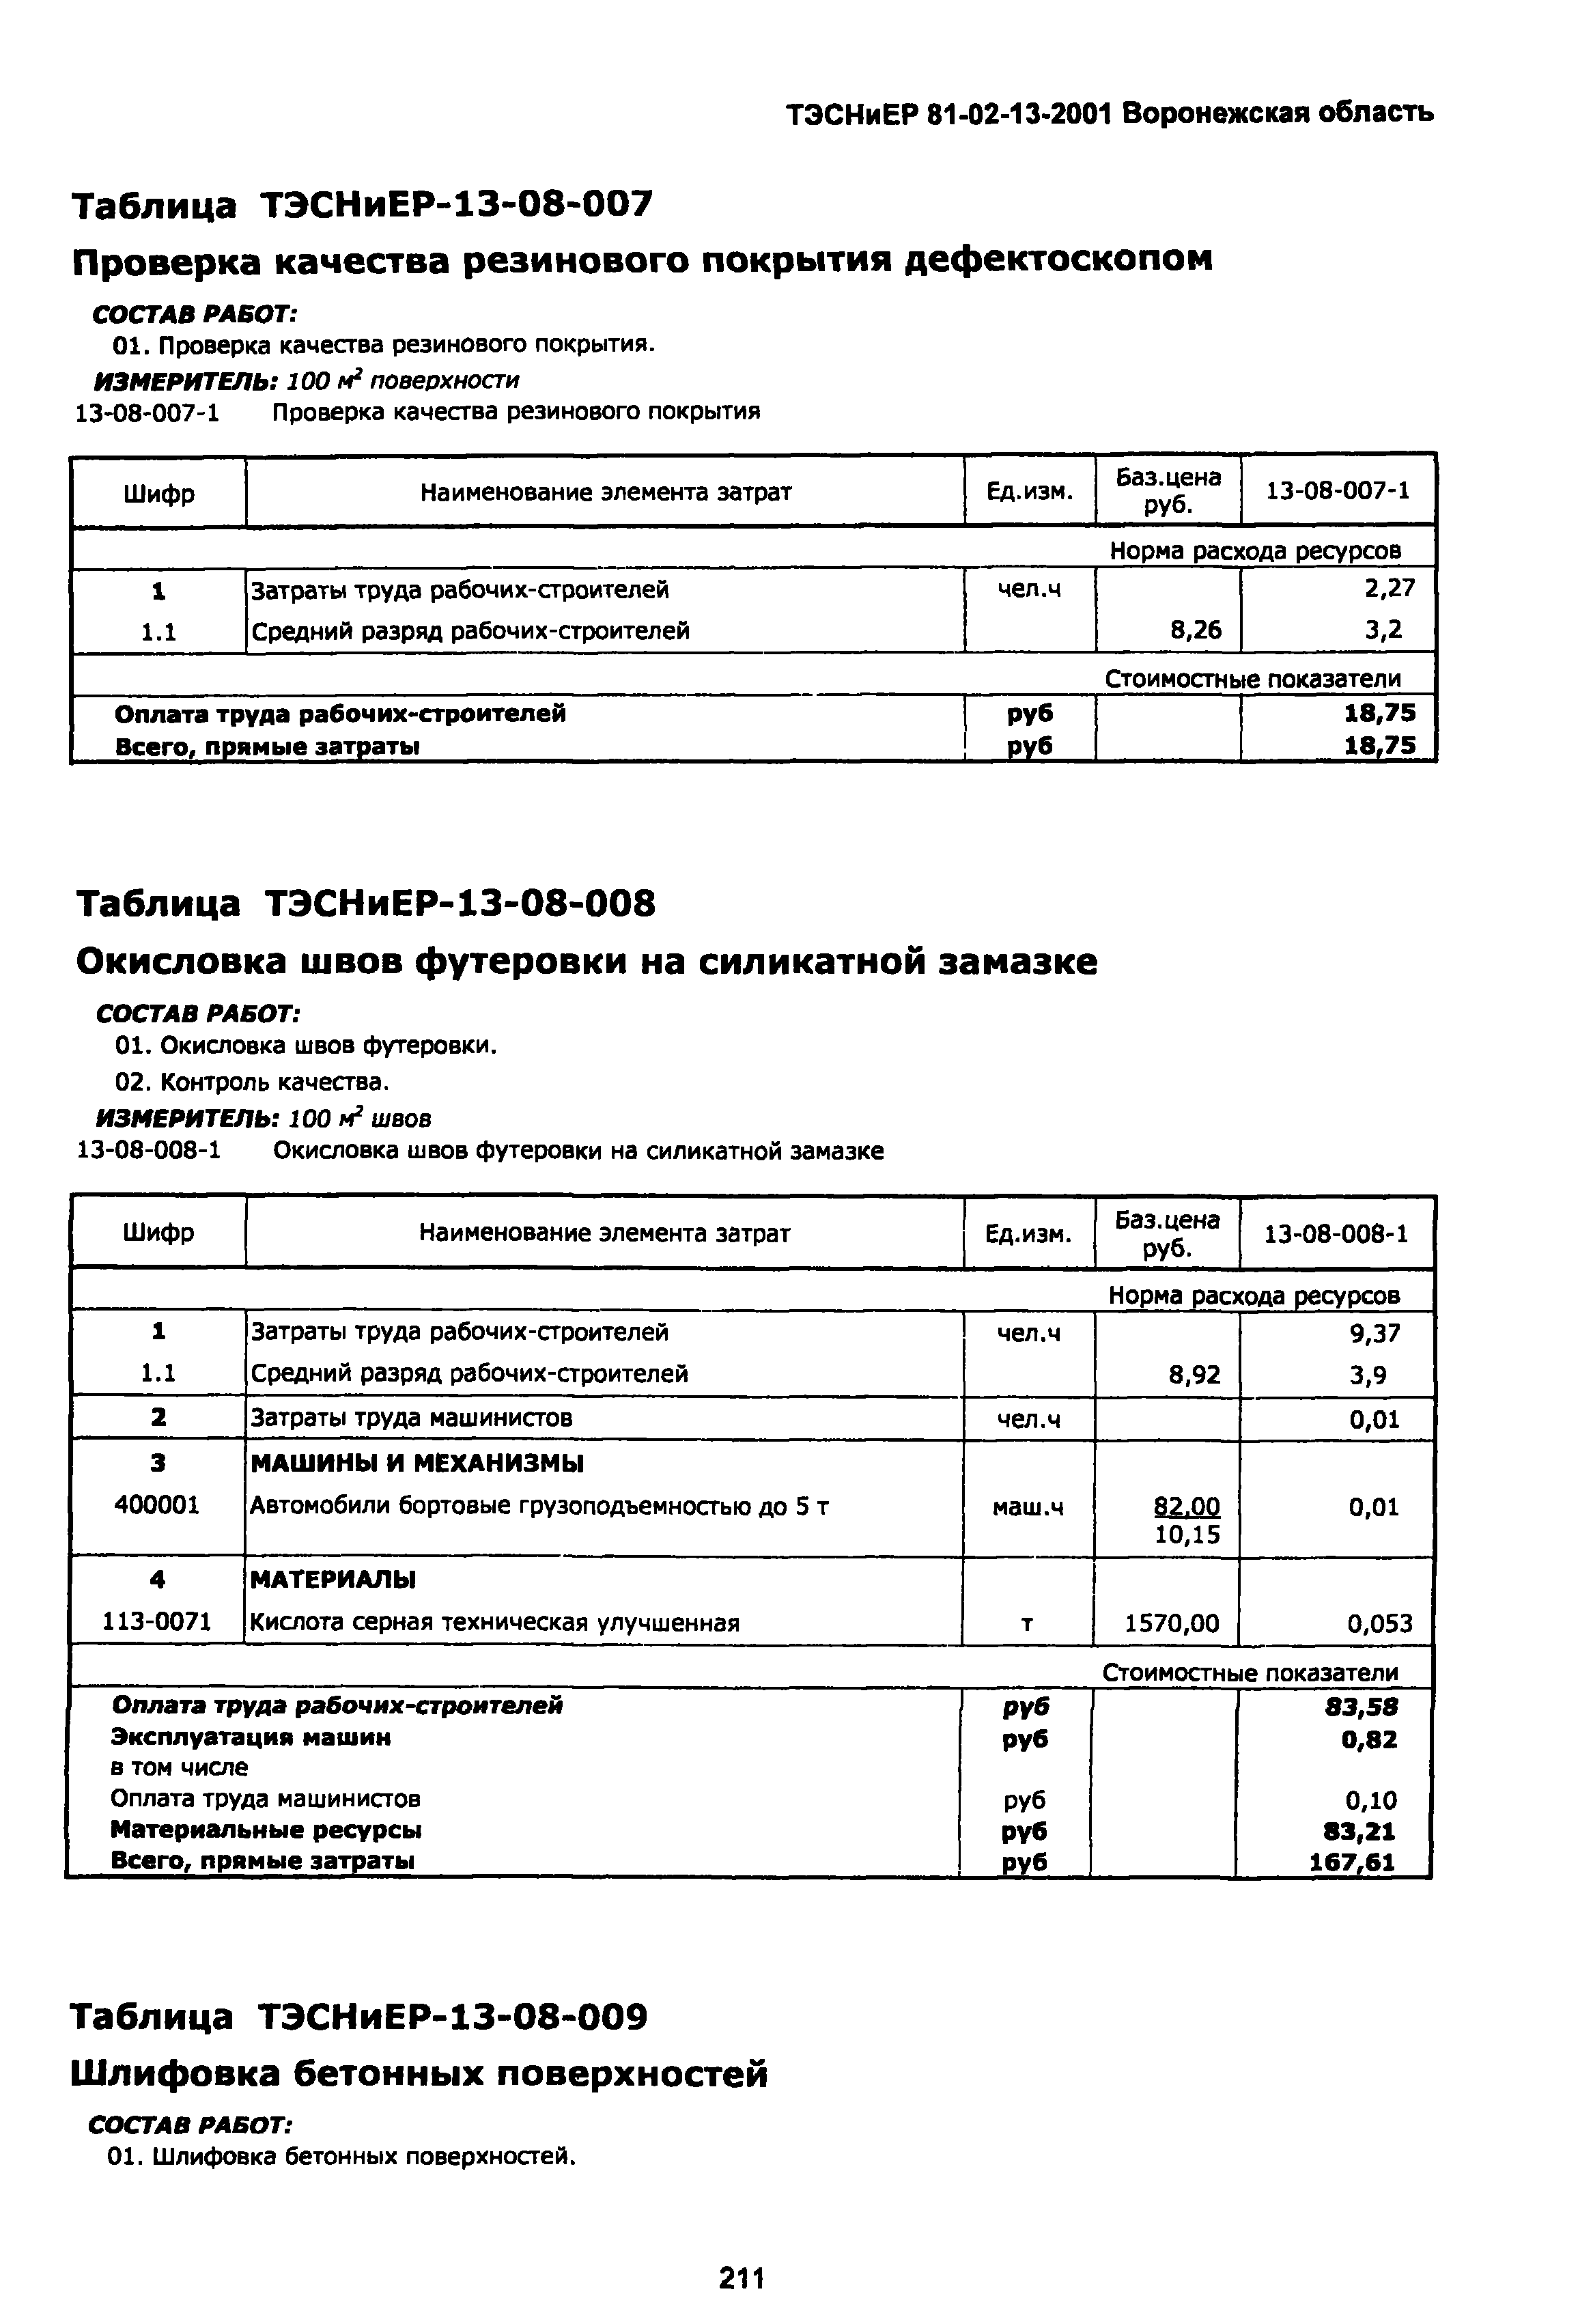 ТЭСНиЕР Воронежской области 81-02-13-2001